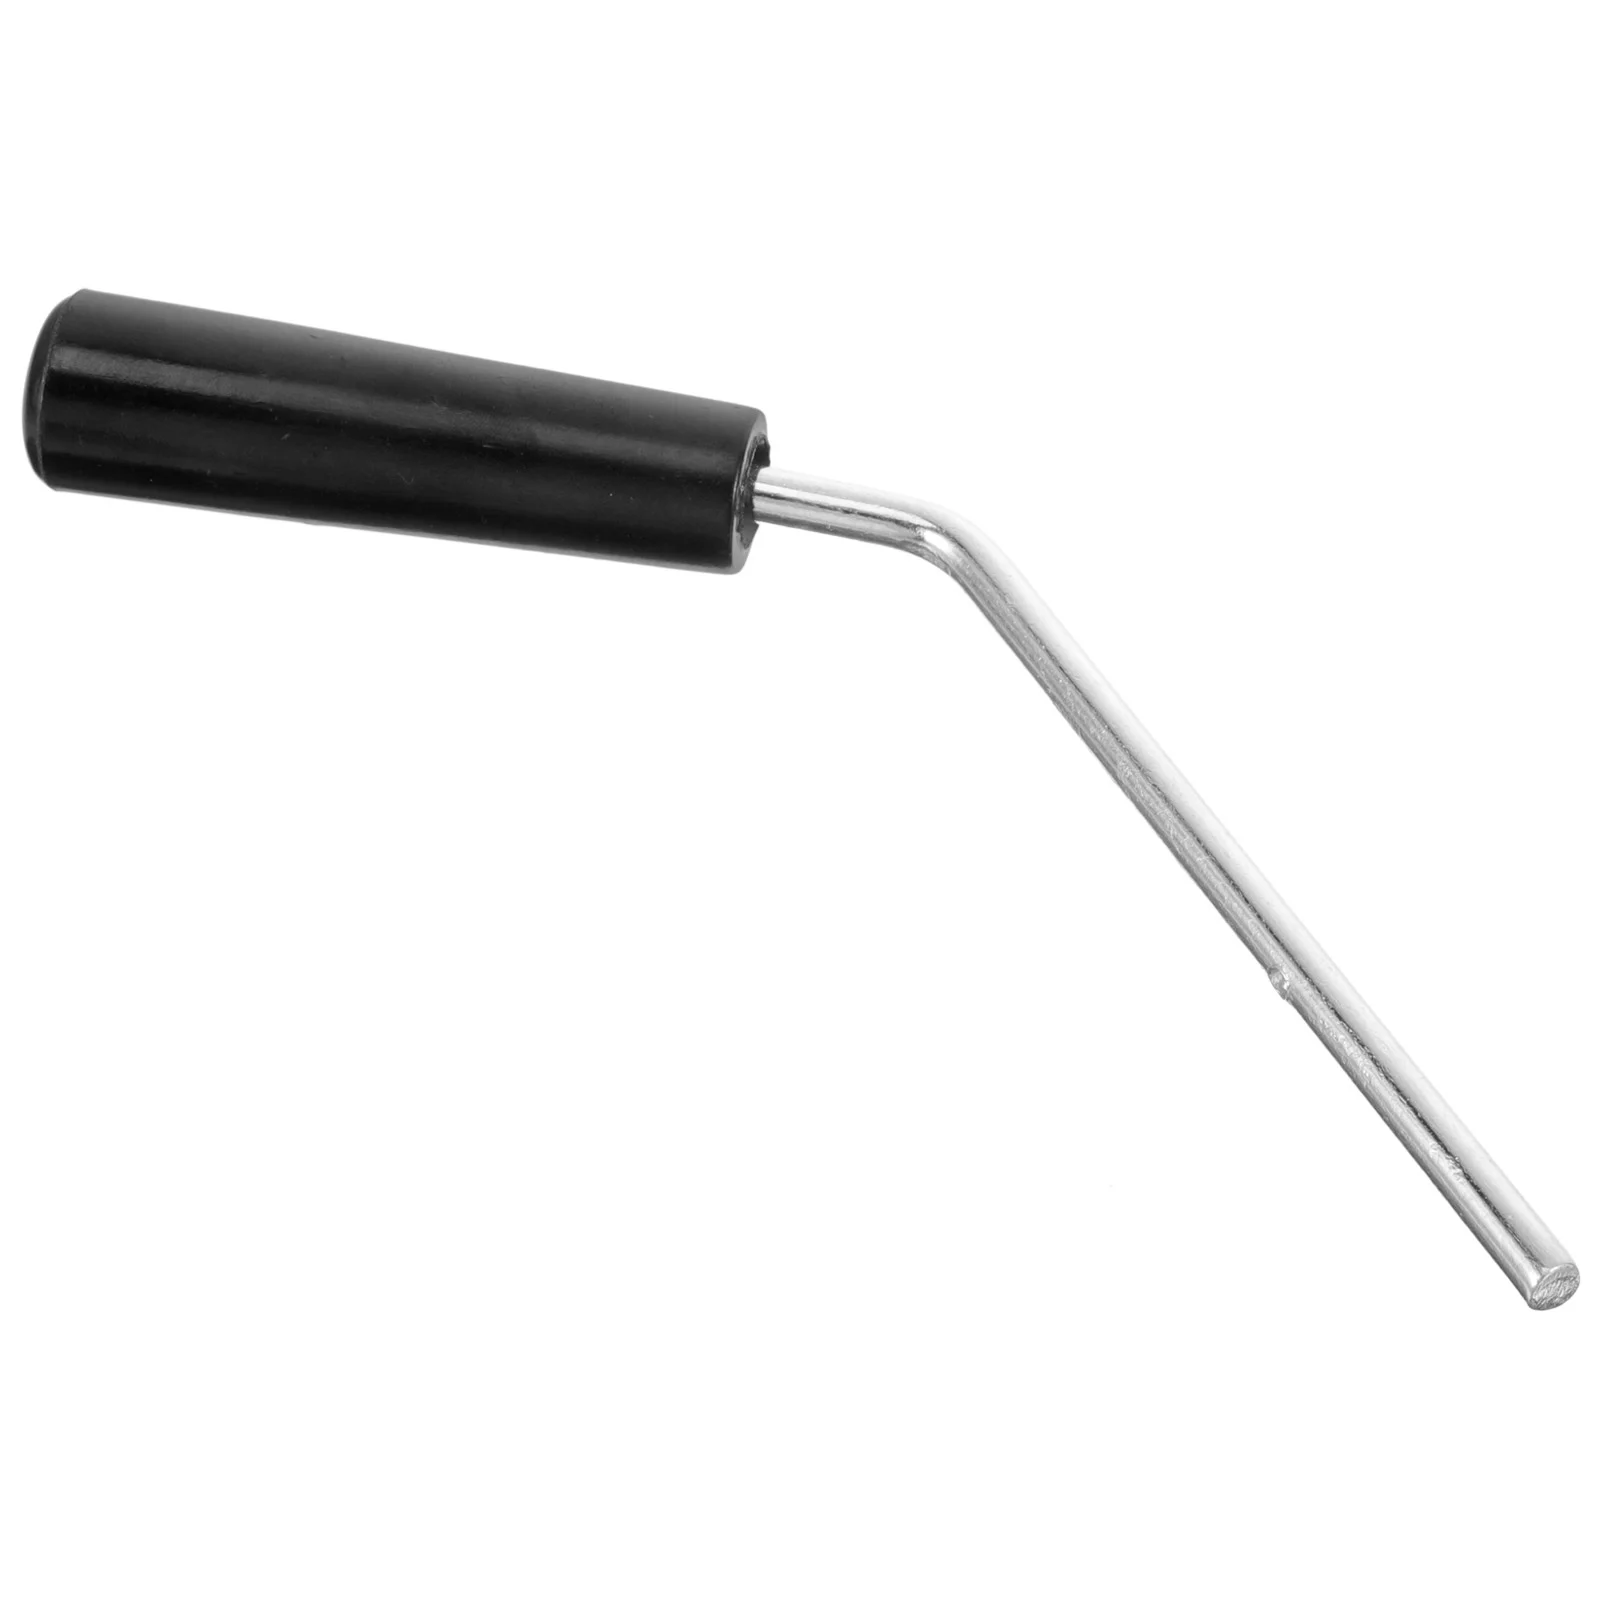 

Ручка для изготовления попкорна, сменная Крышка для кастрюли, пластиковая железная ручка для коммерческого использования